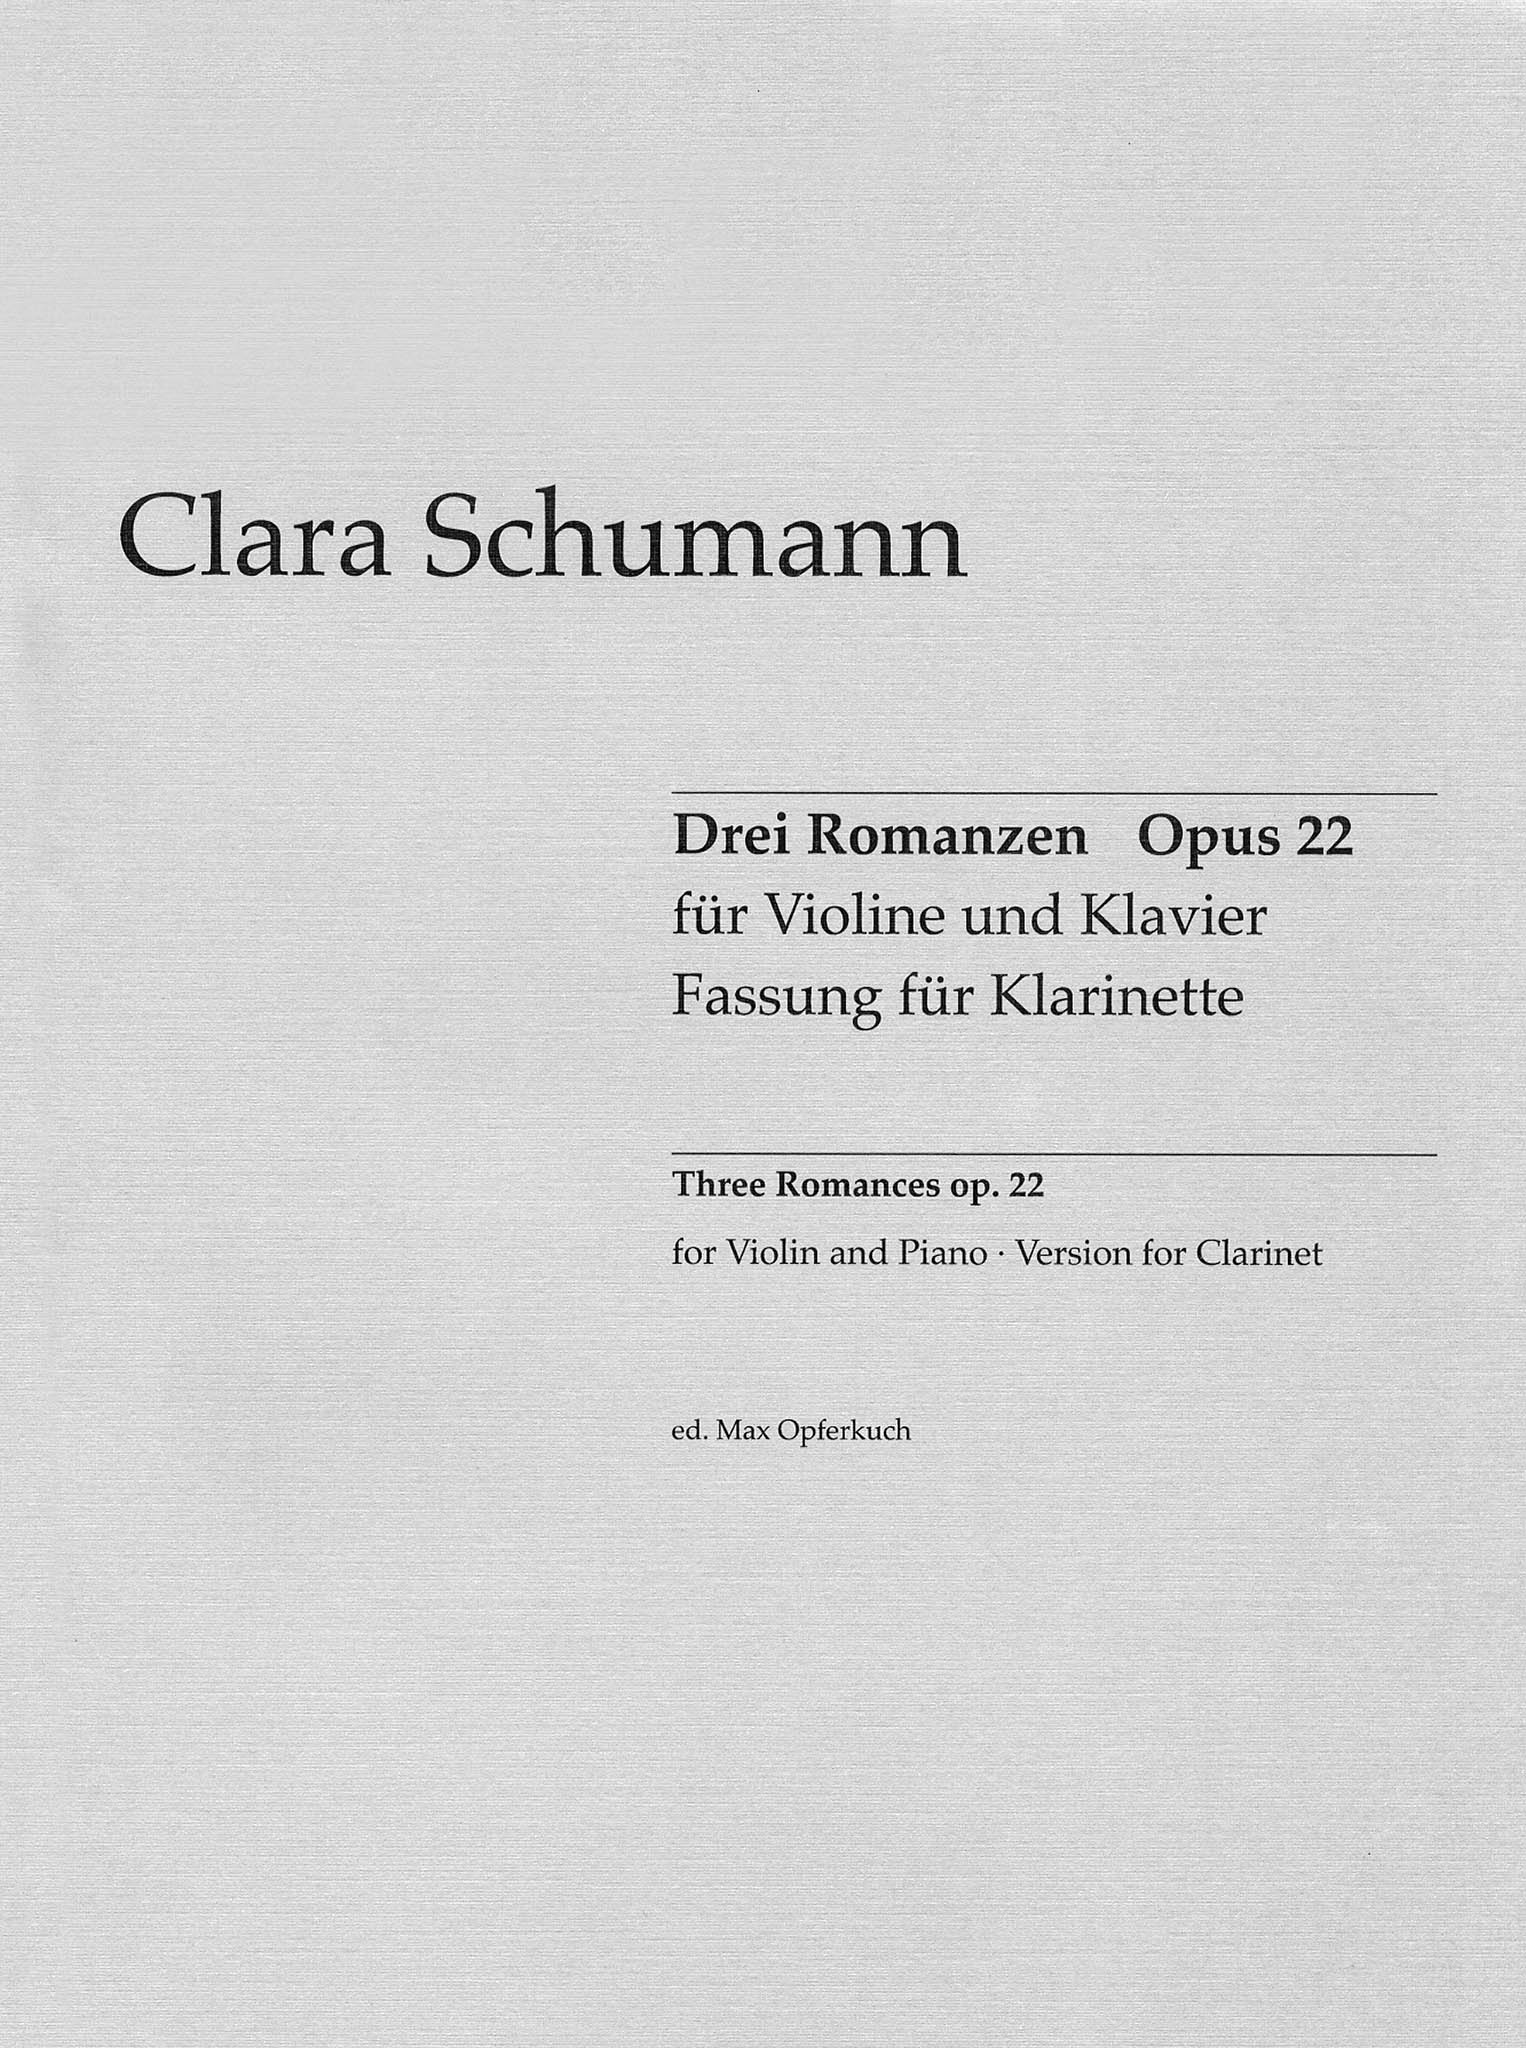 Clara Schumann Drei Romanzen, Op. 22 clarinet arrangement cover